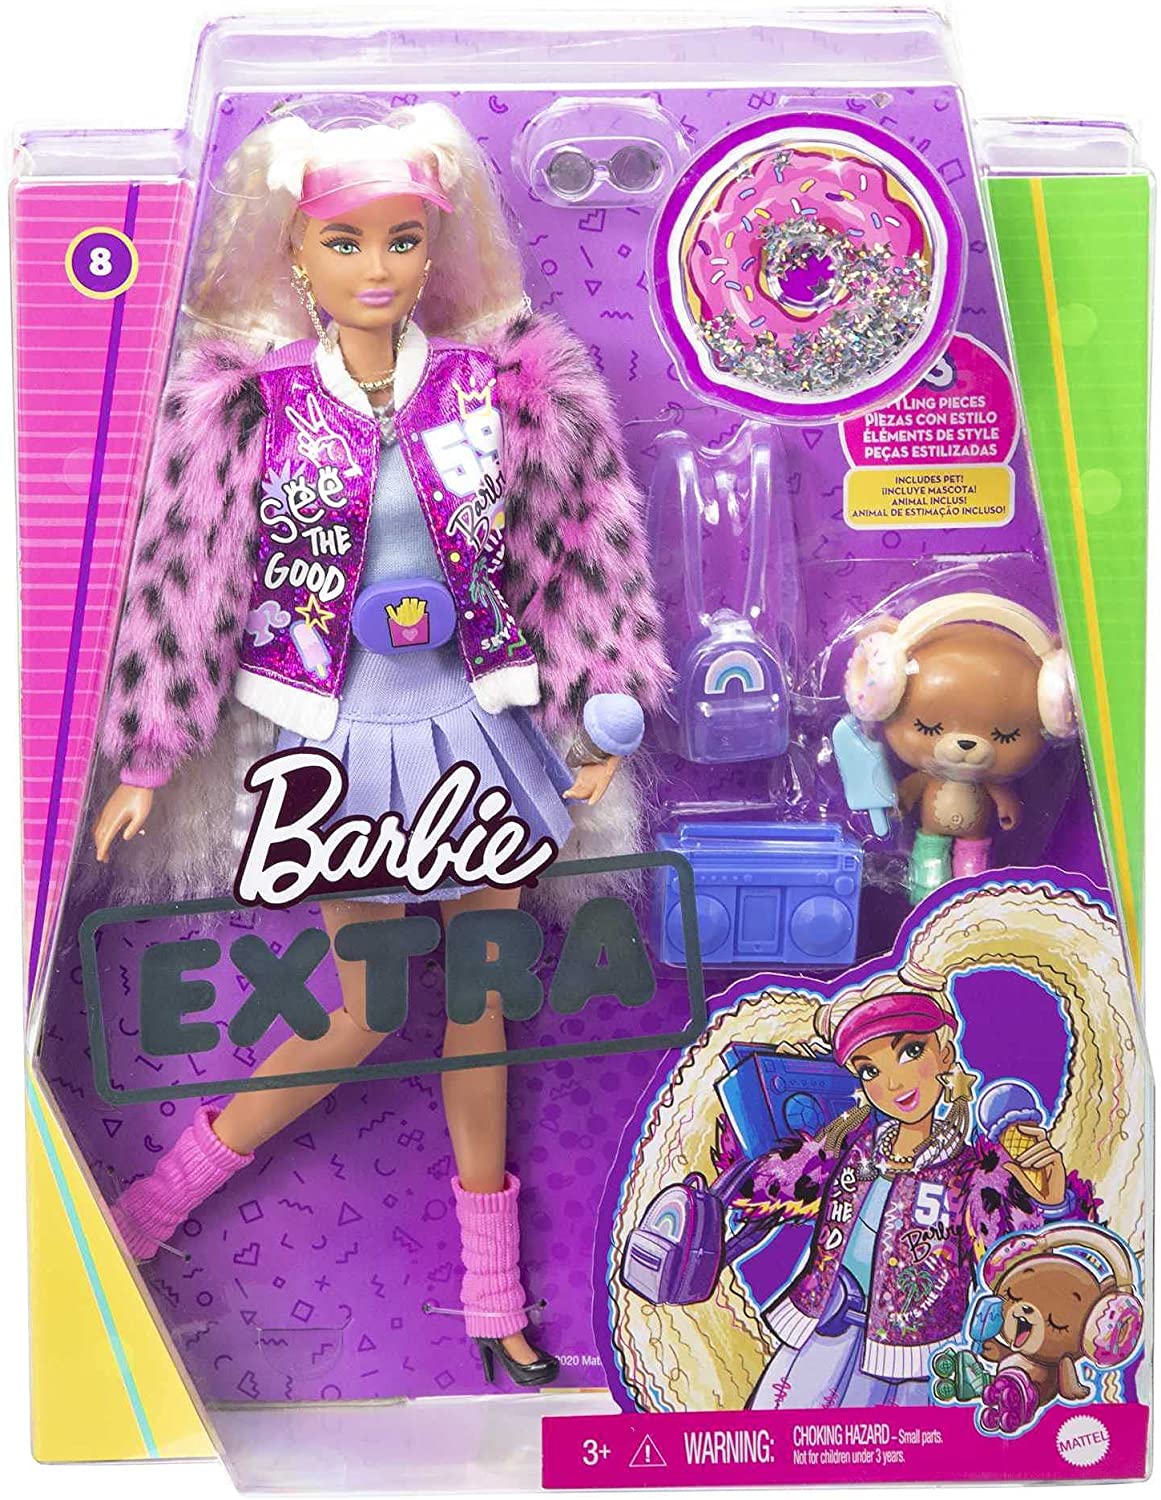 Info Barbie 🌸 on X: BARBIE × GAP — #Barbie irá ganhar uma coleção de  roupas e acessórios para adultos, crianças e animais de estimação pela Gap.  A coleção irá incluir moletons